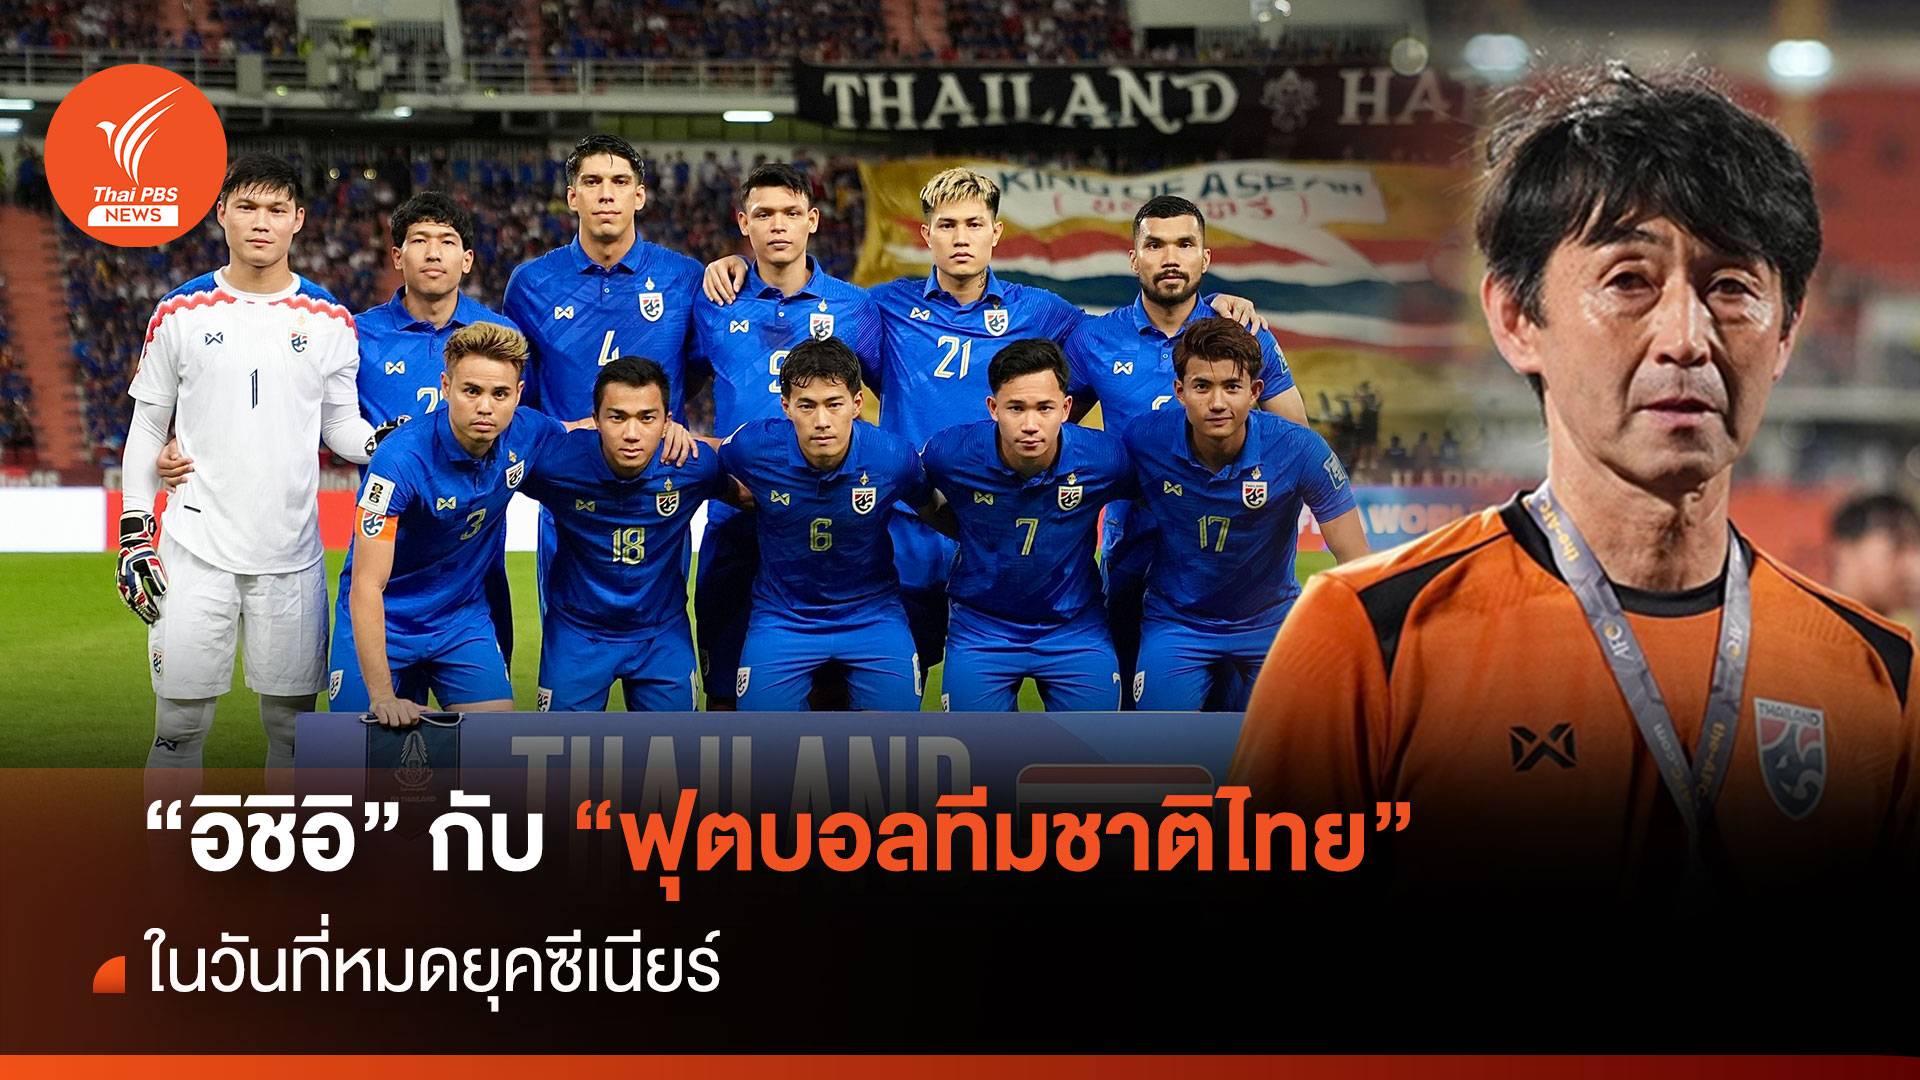 "อิชิอิ" กับ "ฟุตบอลทีมชาติไทย" ในวันที่หมดยุคซีเนียร์